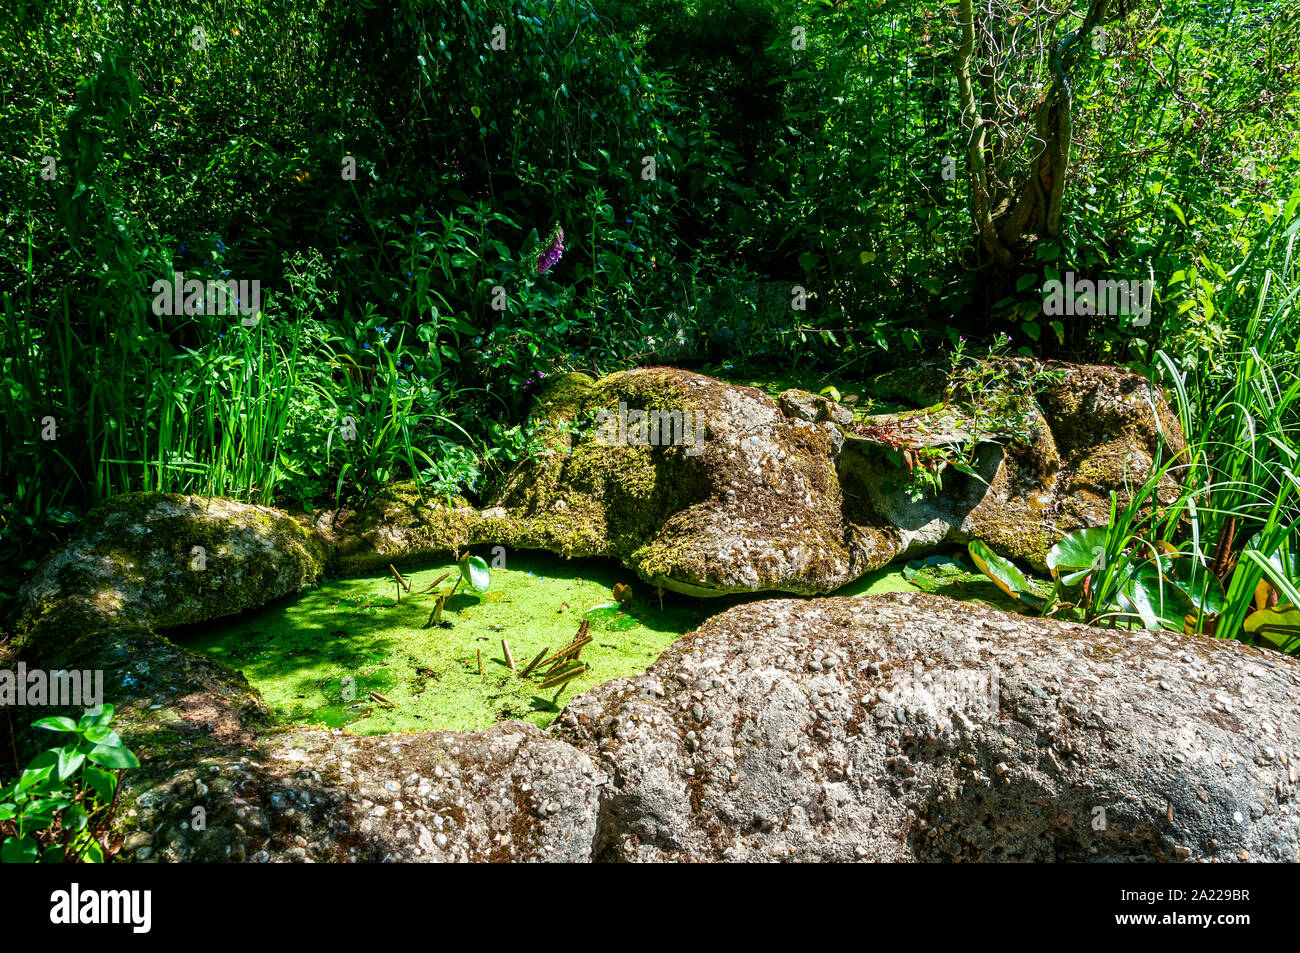 Abbondante verde-giallo lenticchie d'acqua galleggia sulla superficie di un piccolo pool statico racchiuso da sponde rocciose circondata dal verde lussureggiante vegetazione naturale Foto Stock